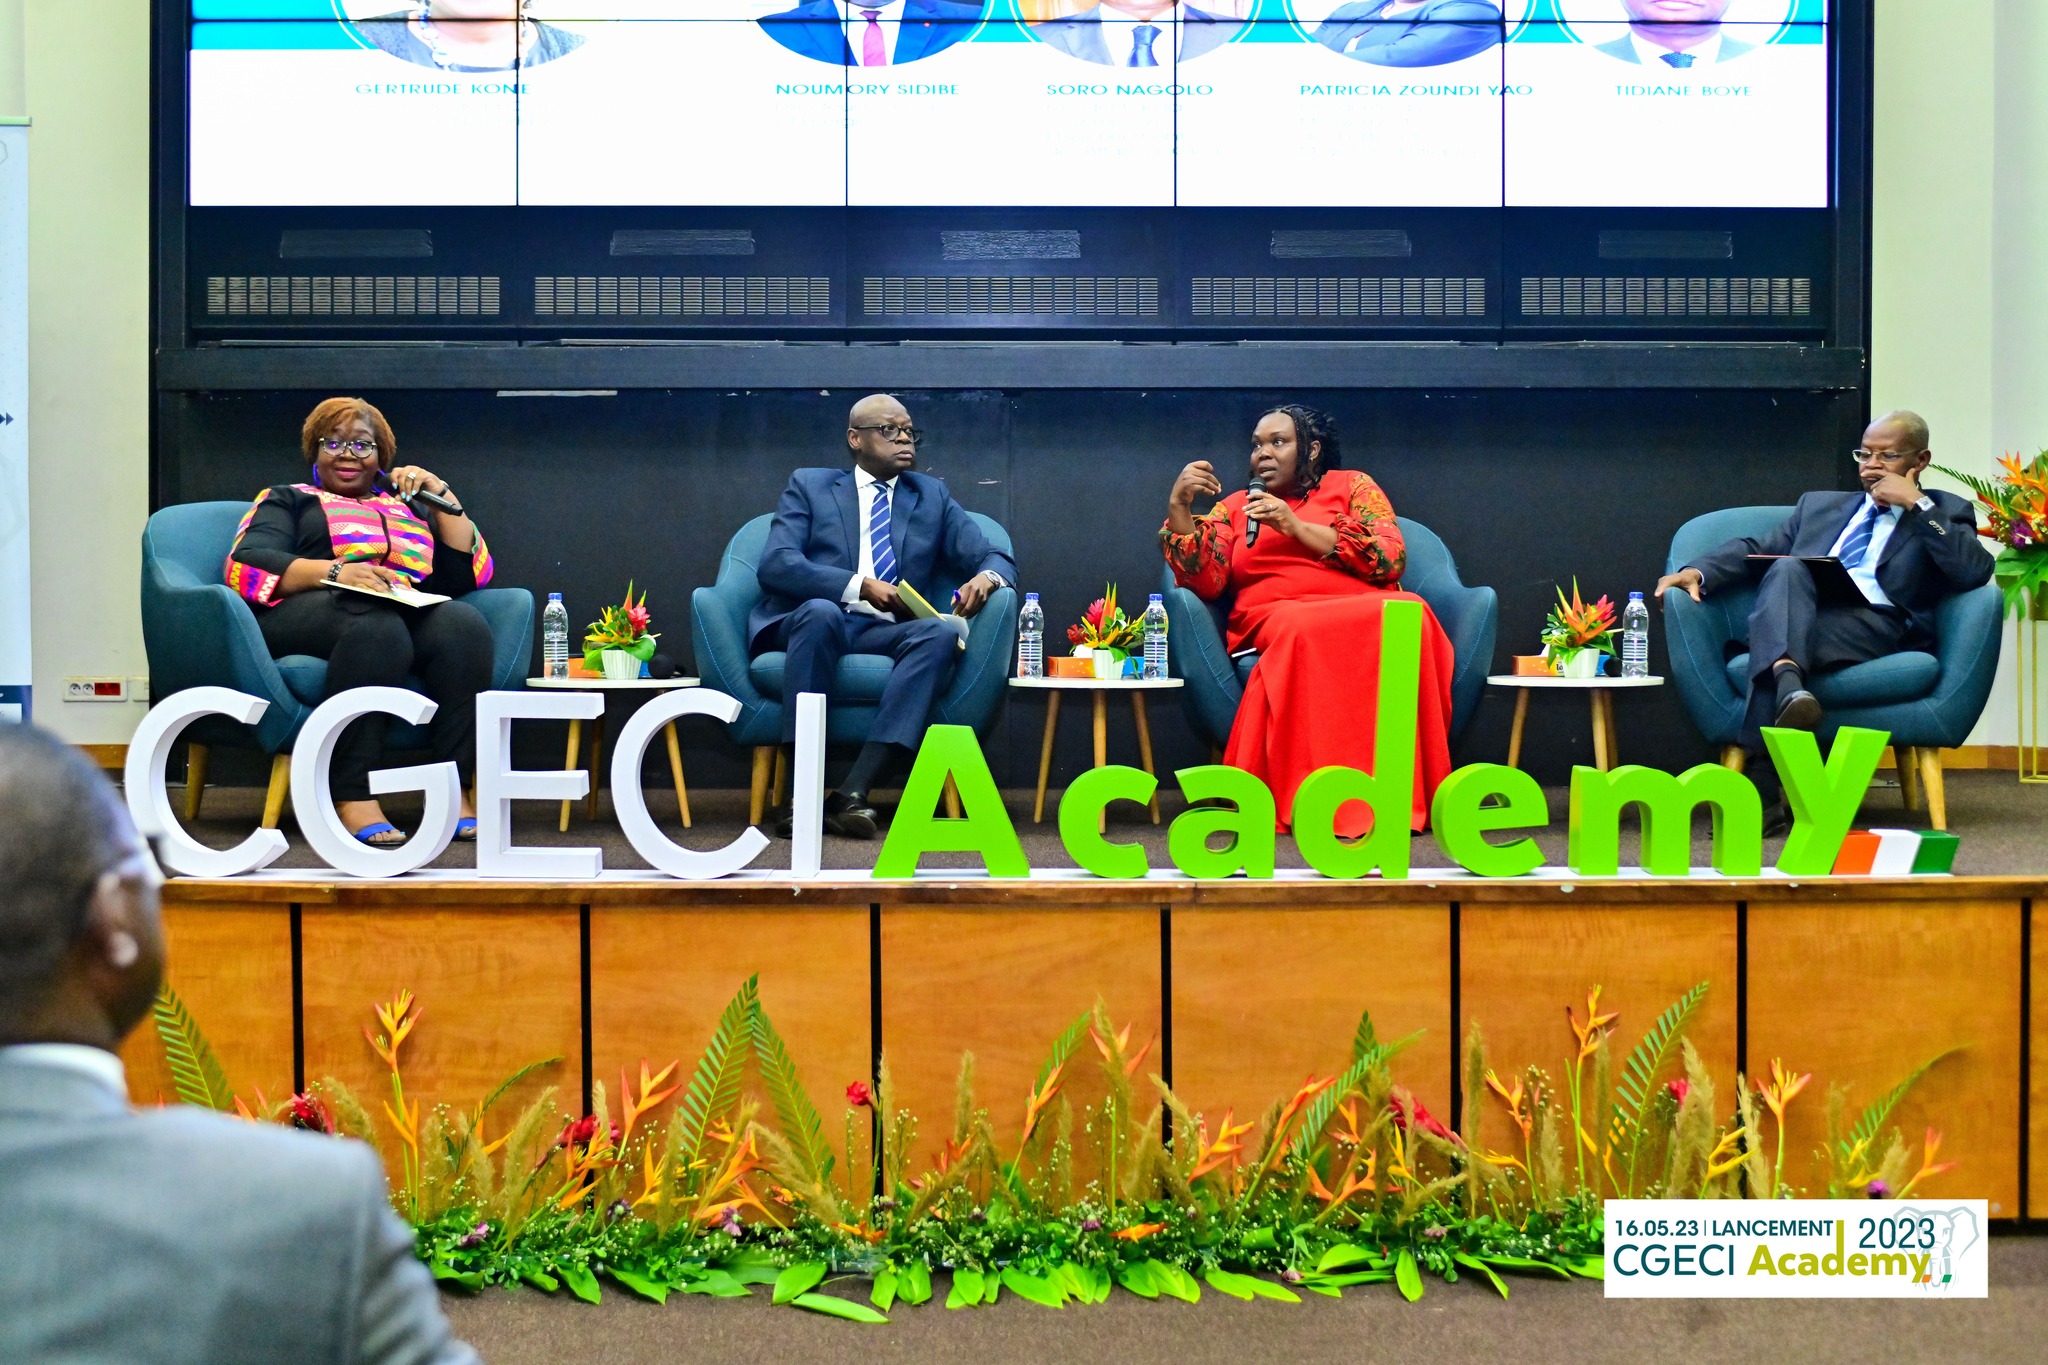 Cgeci Academy 2023 : Les entreprises ivoiriennes invitées à se réinventer pour être plus productives et compétitives.